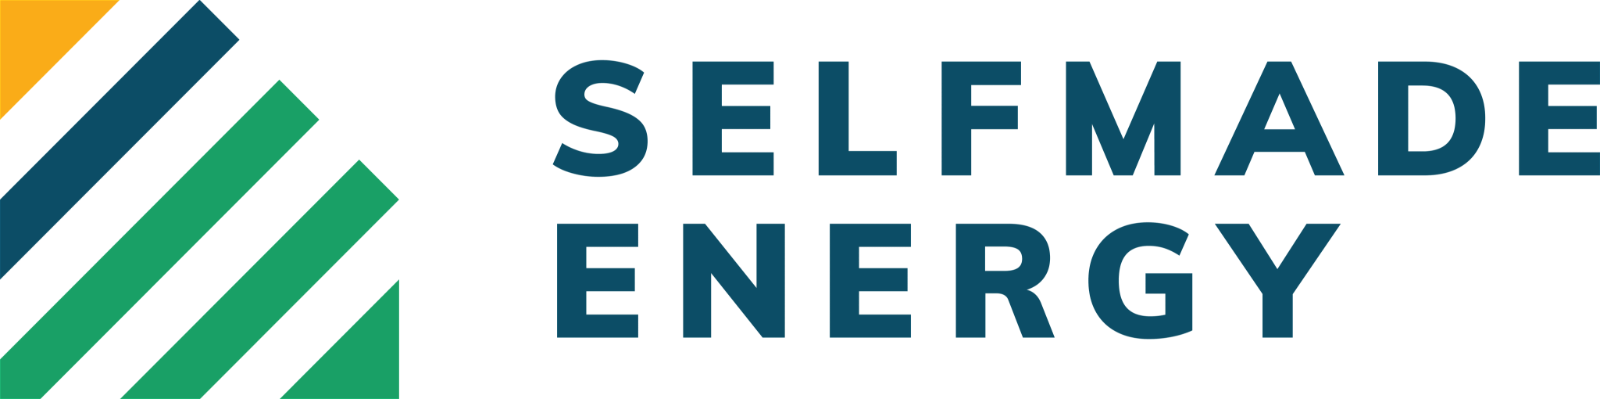 Selfmade-Energy